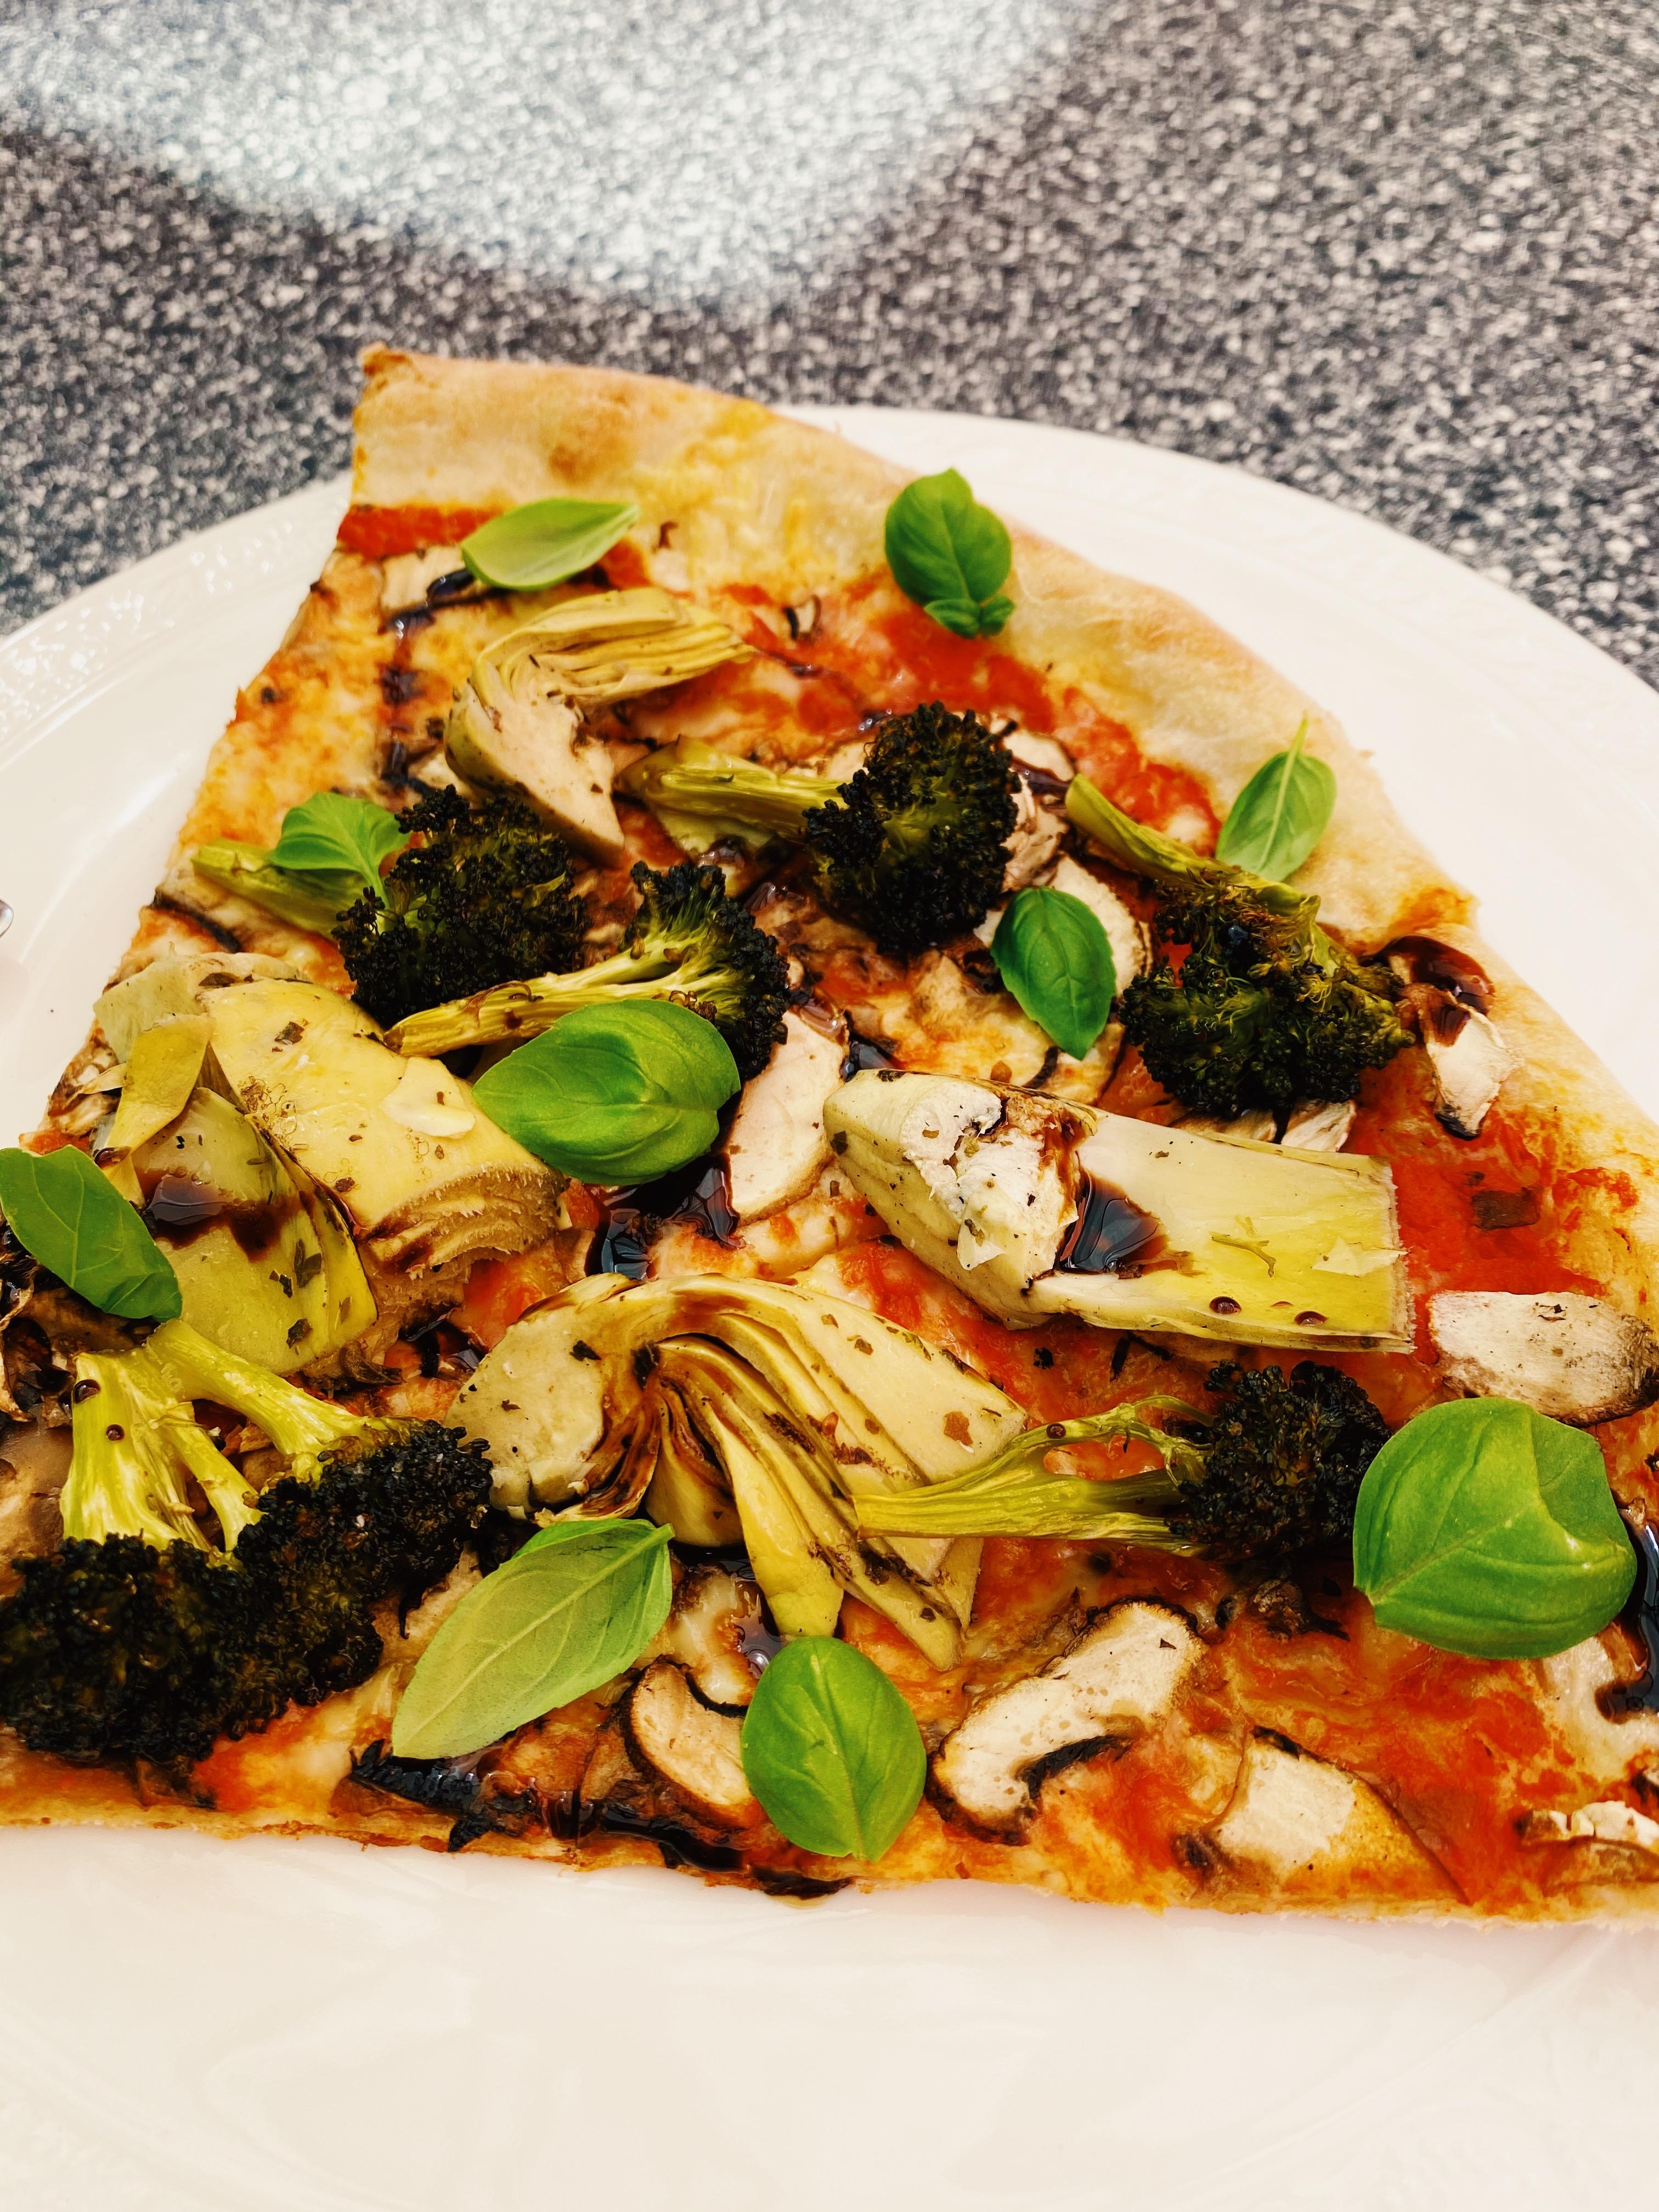 Ein Leben ohne #Pizza ist möglich aber sinnlos 😋 #veggielove #vegetarisch #lecker